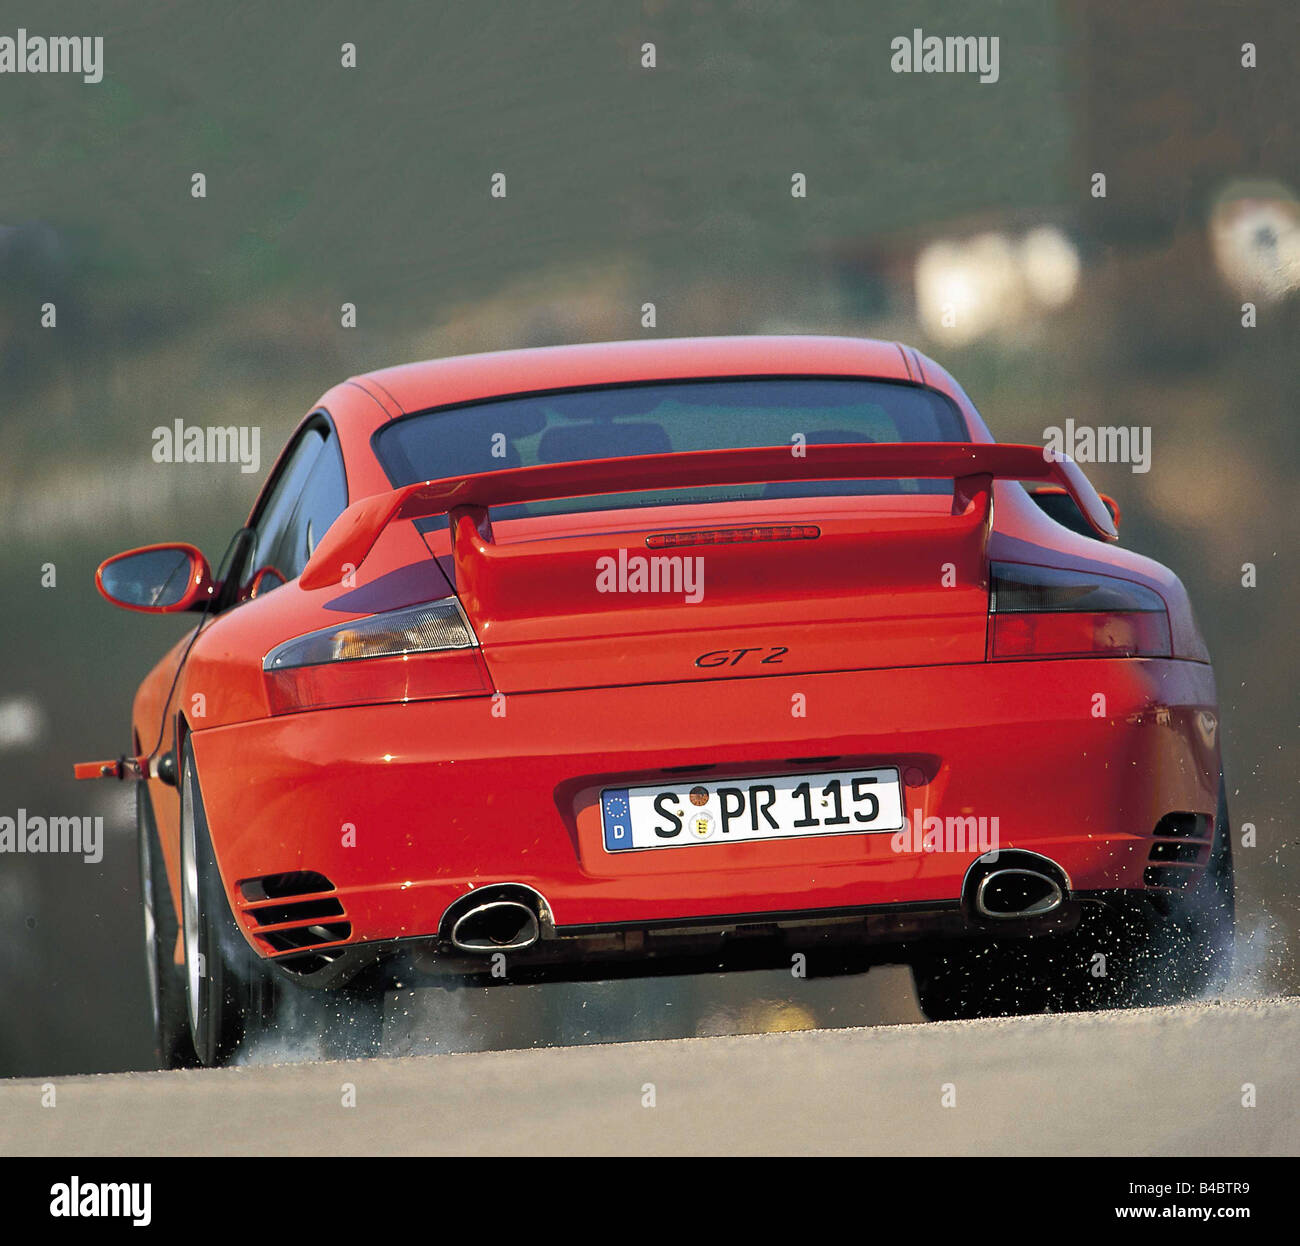 Auto, Porsche 911 GT2, modello anno 2001-, rosso, roadster, coupe, dal retro, vista posteriore, ams 05/2001, Seite 022 Foto Stock